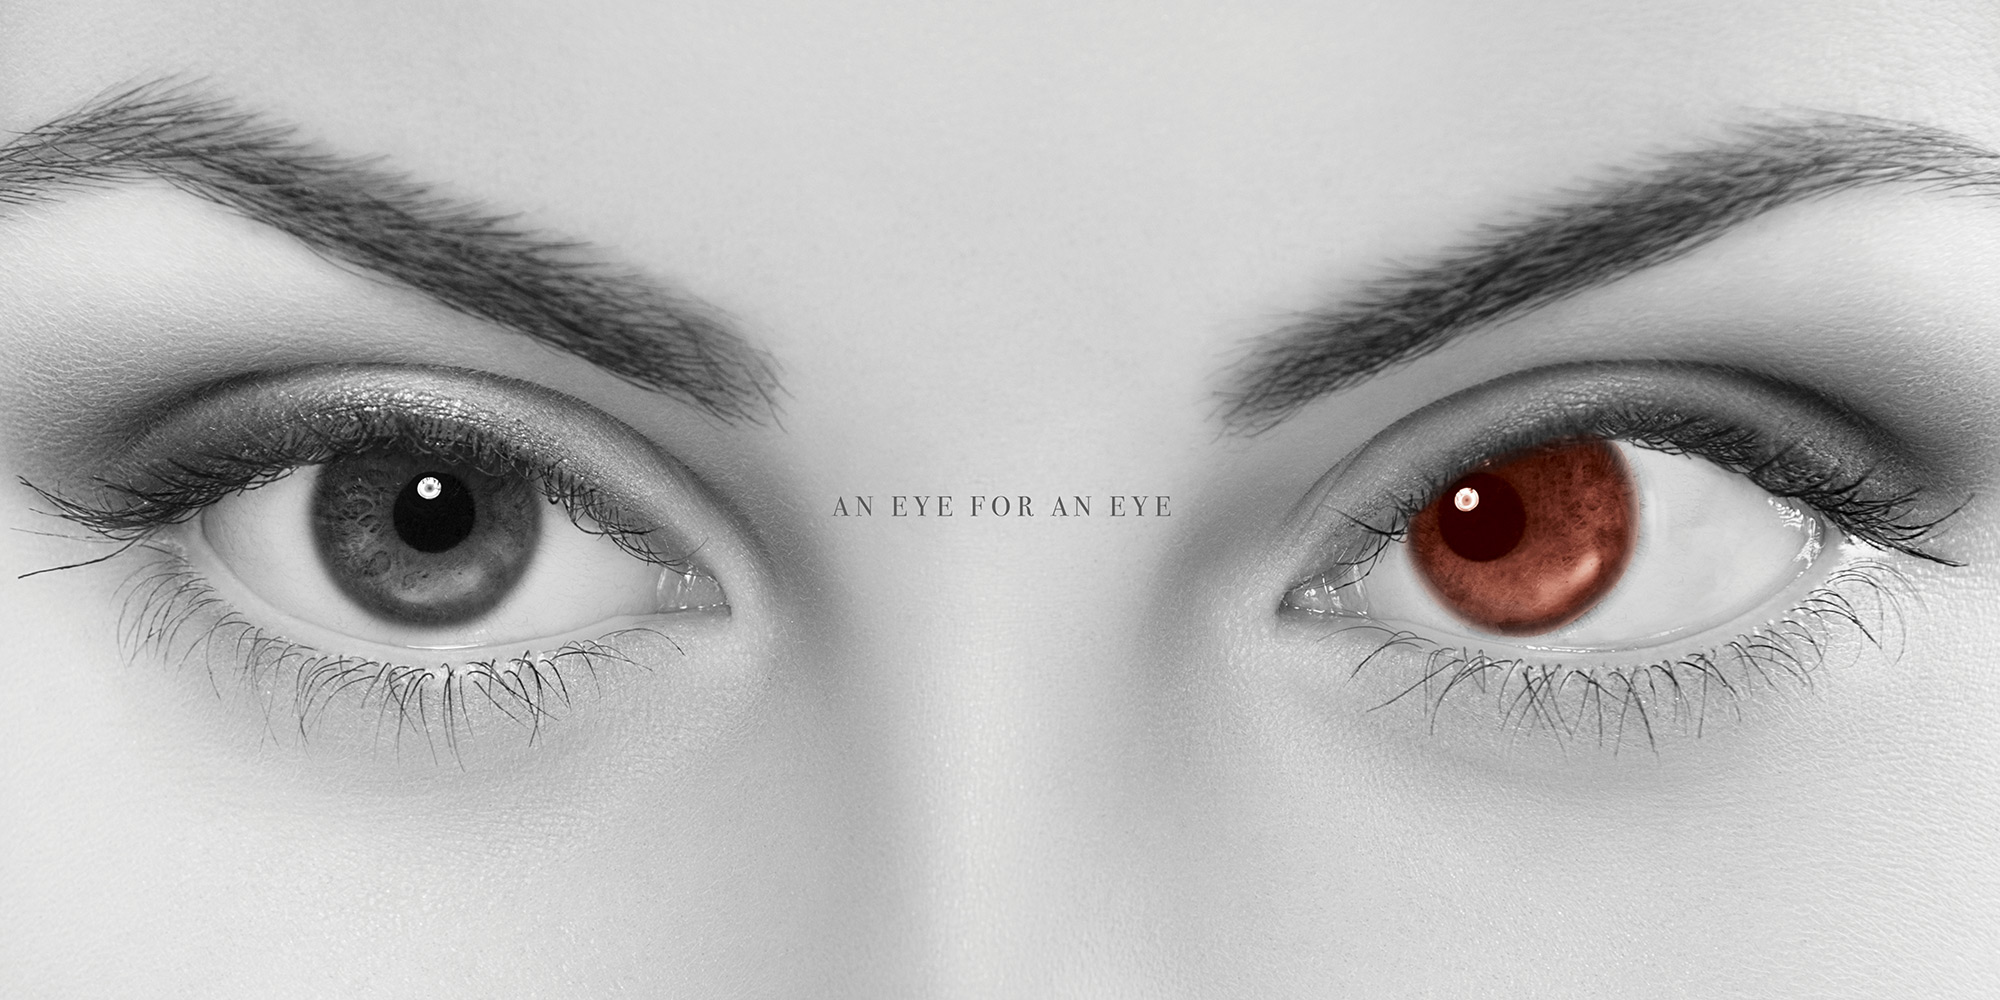 Jeff Kern design for "Eye For An Eye"